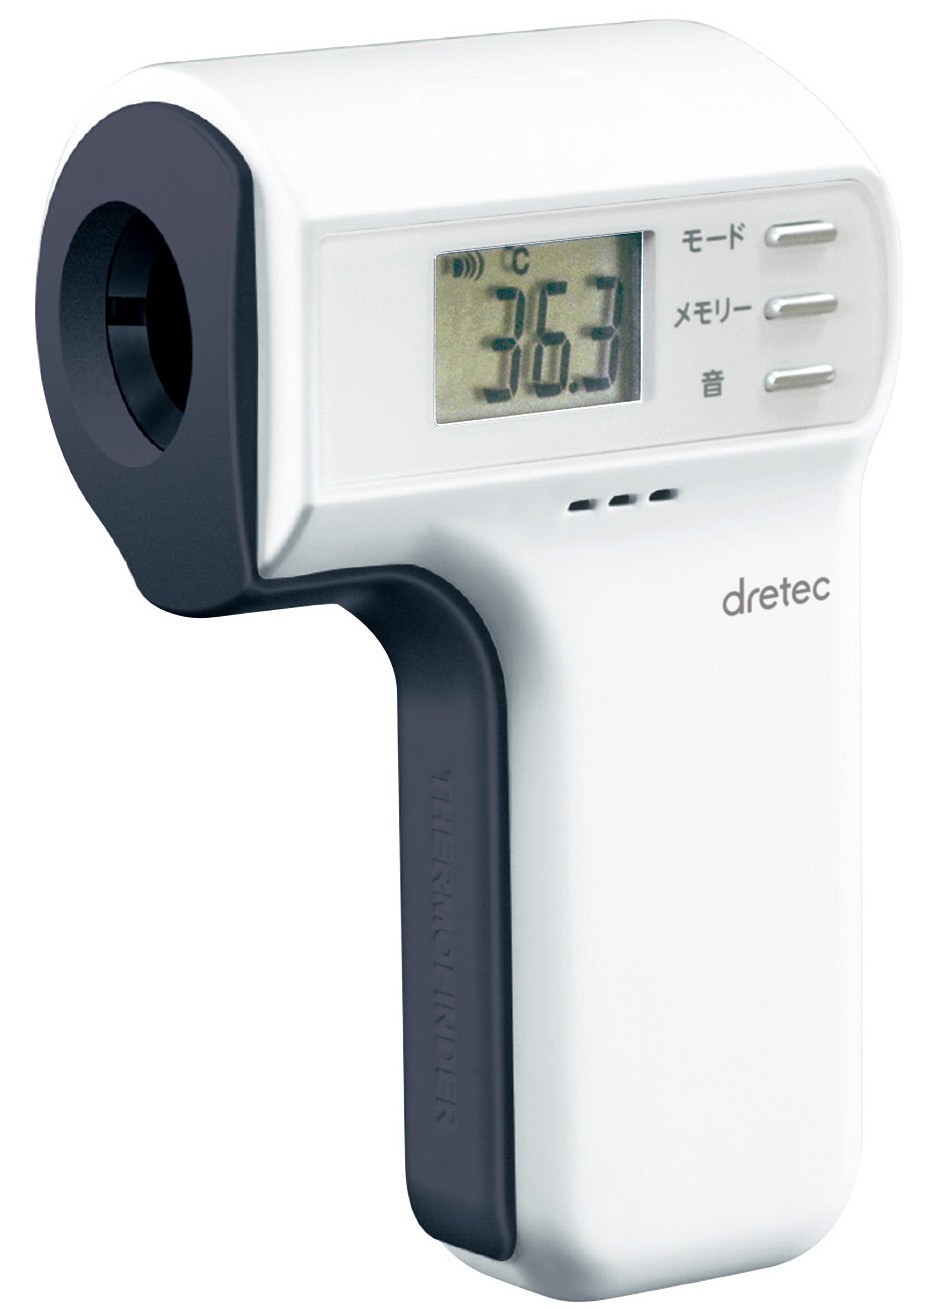 体温計としても温度計としても利用可能